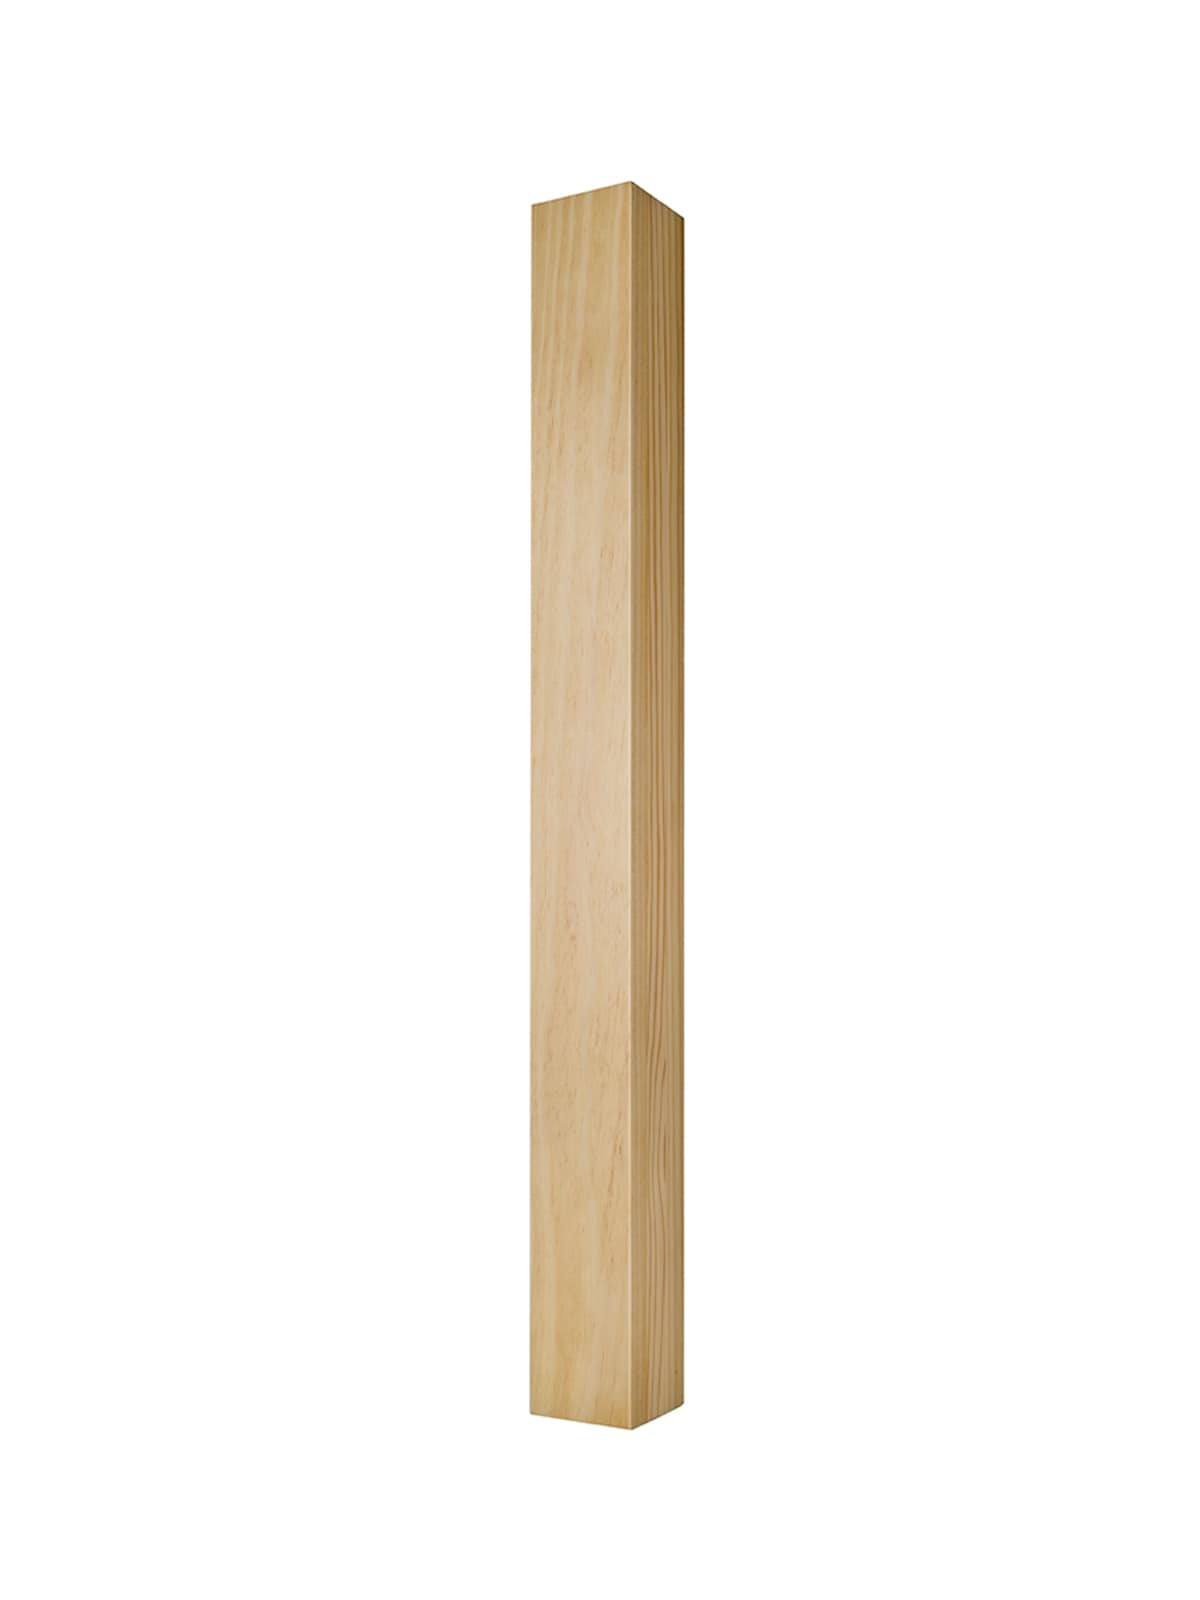 Ash Wood table legs 